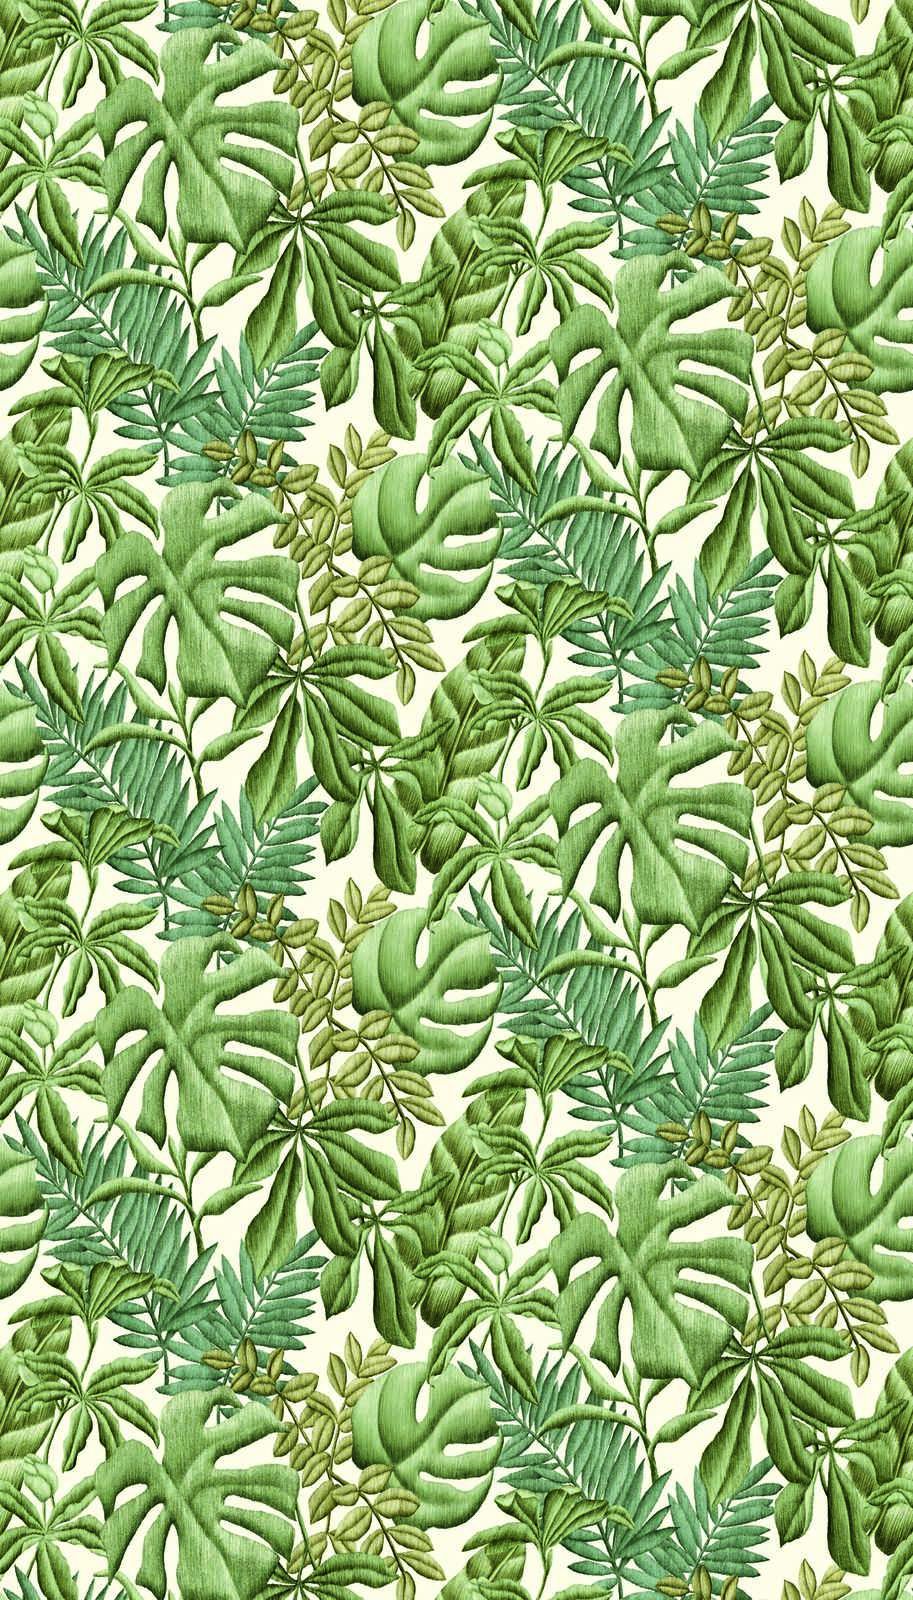             Papier peint intissé avec différentes feuilles - vert, crème
        